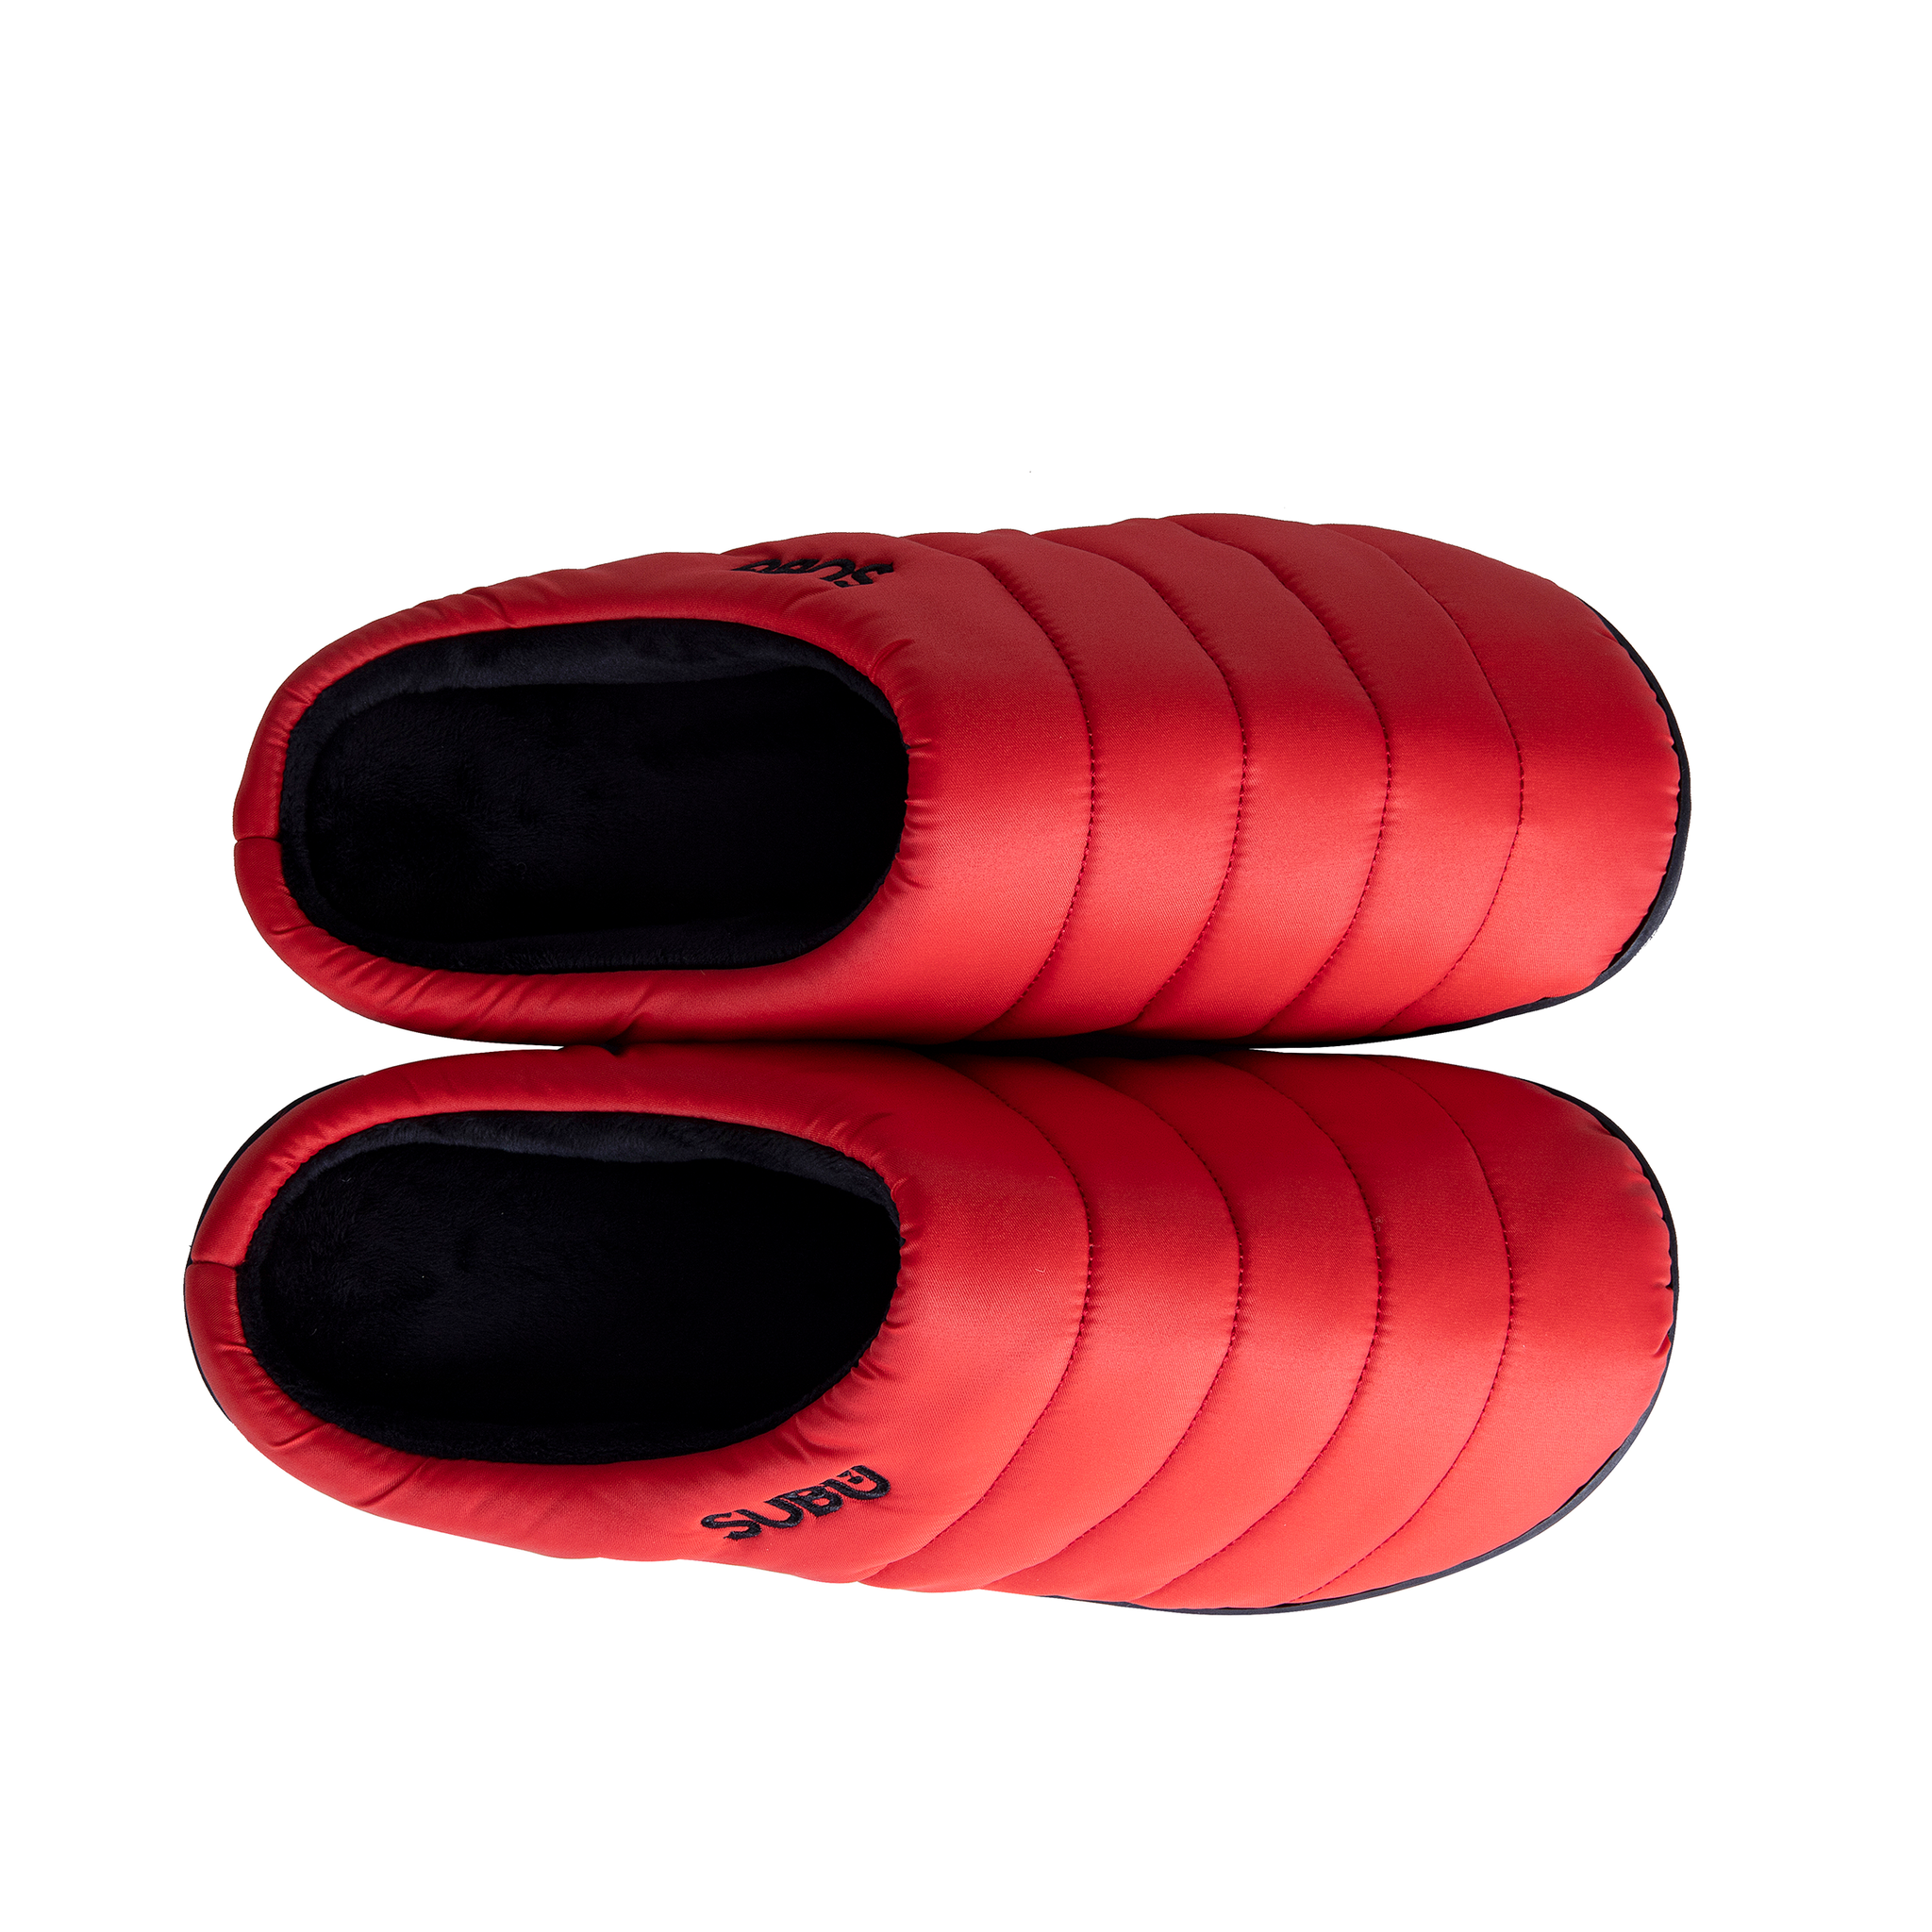 Subu Indoor/Outdoor Slippers - Red